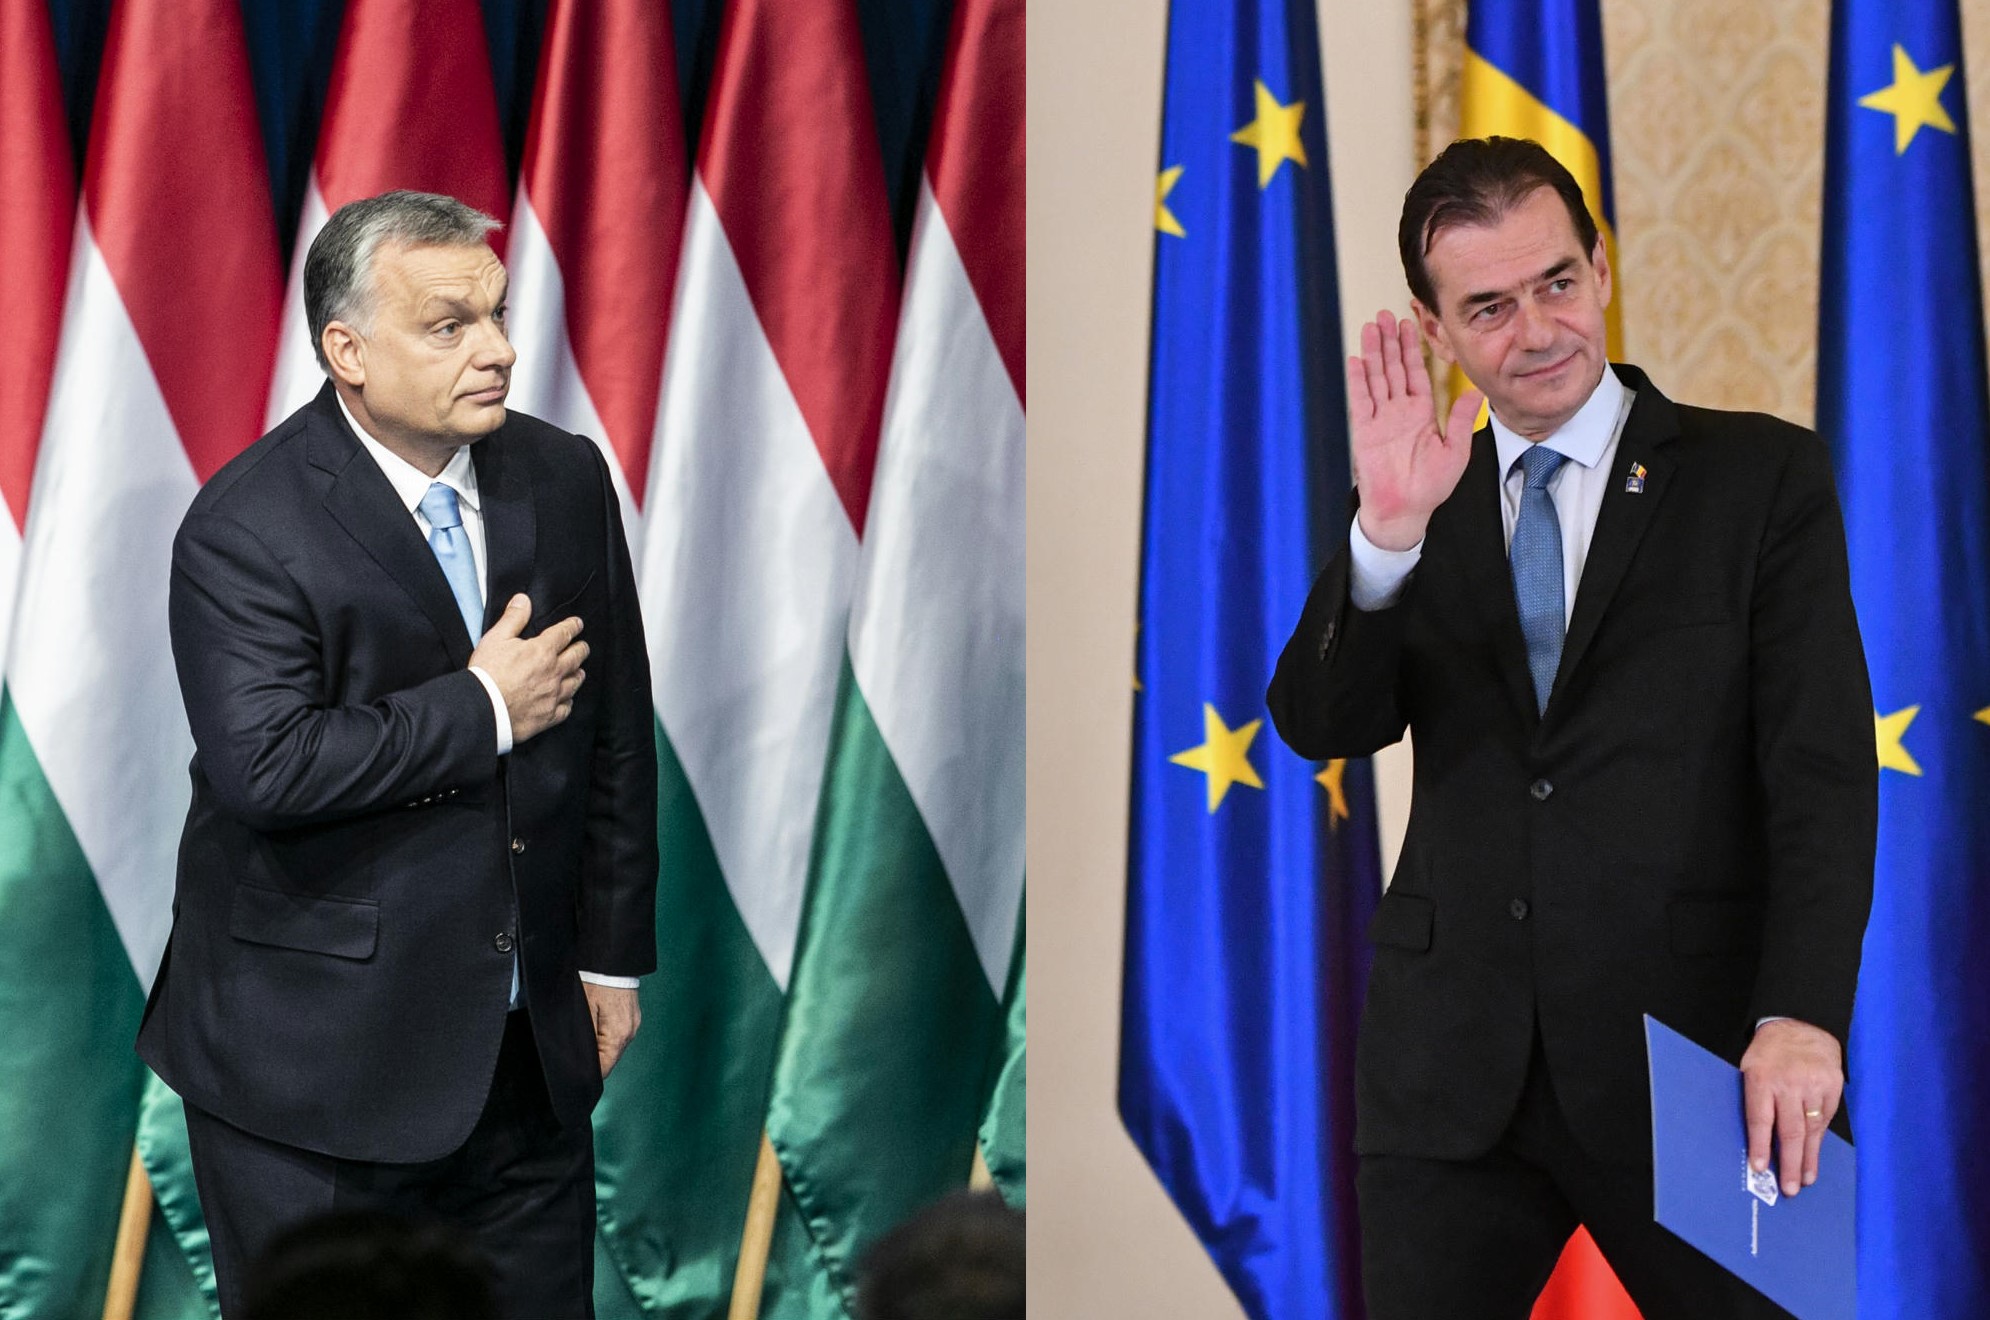 Saját kormányának honlapja is leviktorozta Ludovic Orban román miniszterelnököt